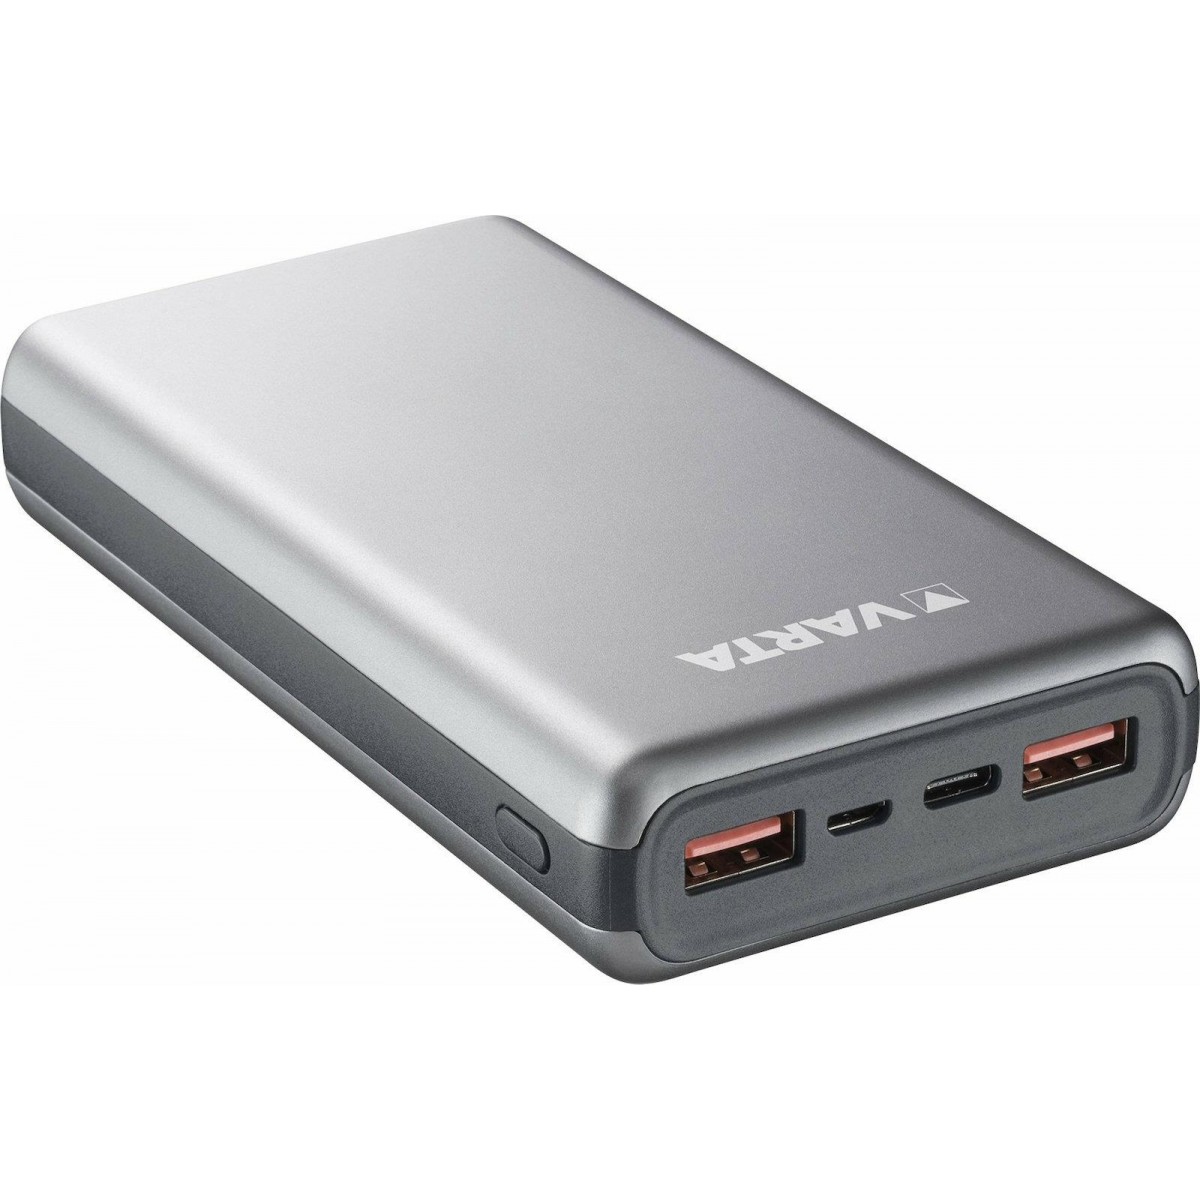 Varta Power Bank Fast Energy 20.000mAh USB-C 18Watt,silver ( 57983 101 111 )